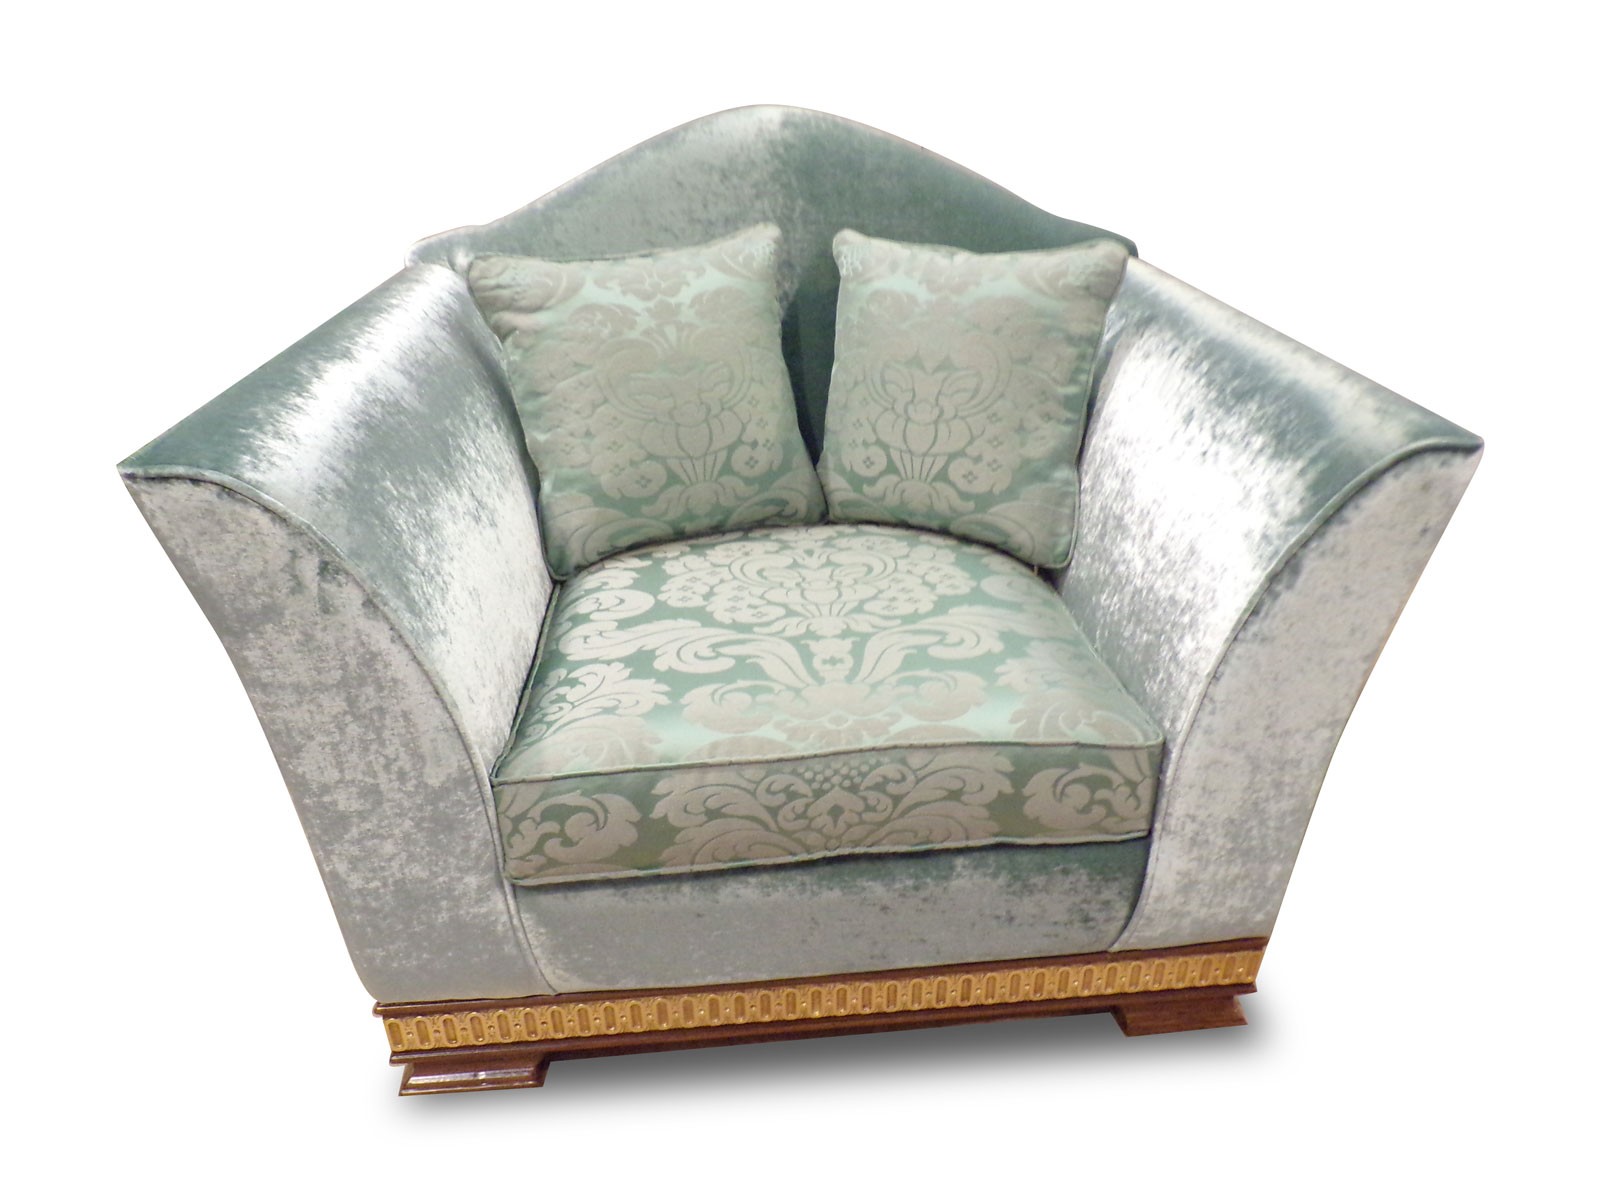 Baroque luxury sofa